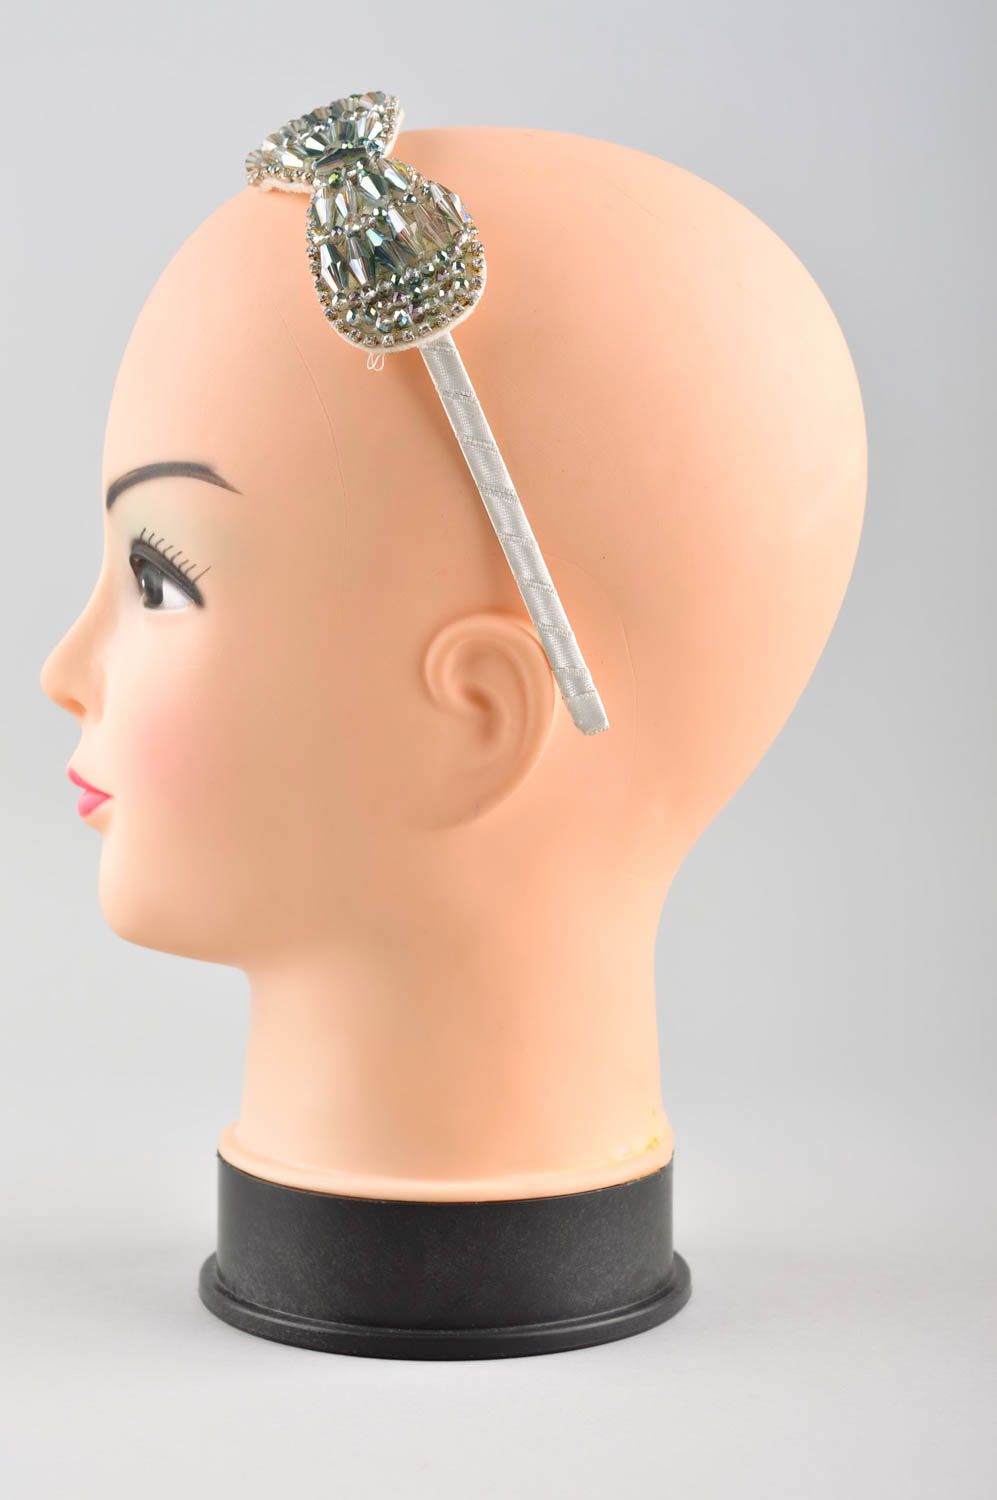 Аксессуар для волос хэнд мэйд обруч на голову с бантиком женский аксессуар фото 2